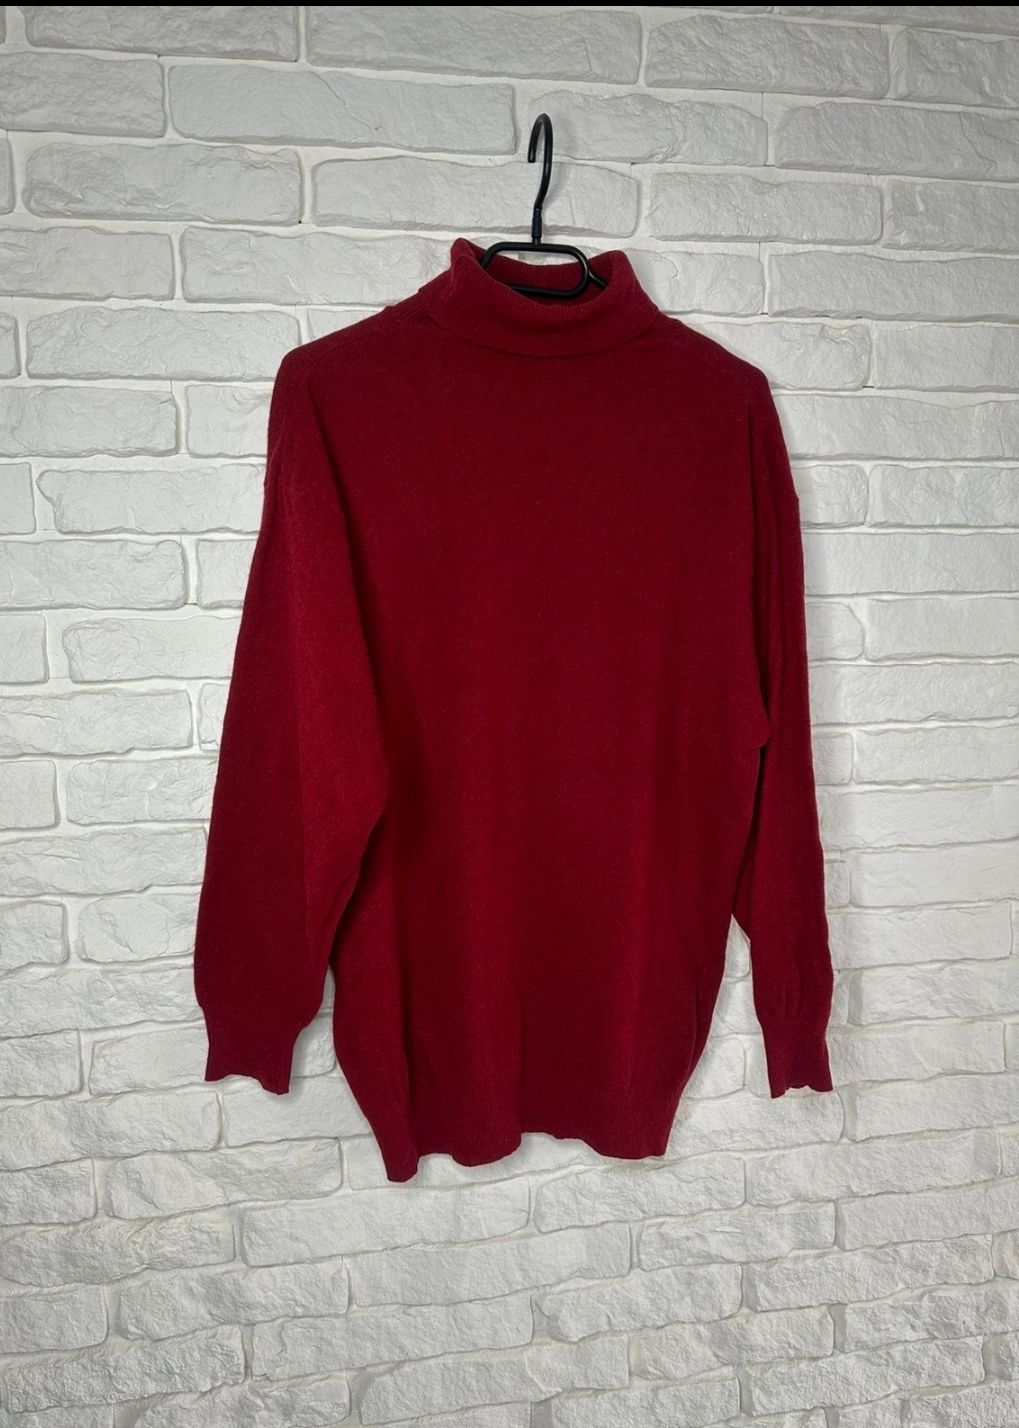 Sweter wełna wełniany 100 procent golf bordowy czerwony do handmade S